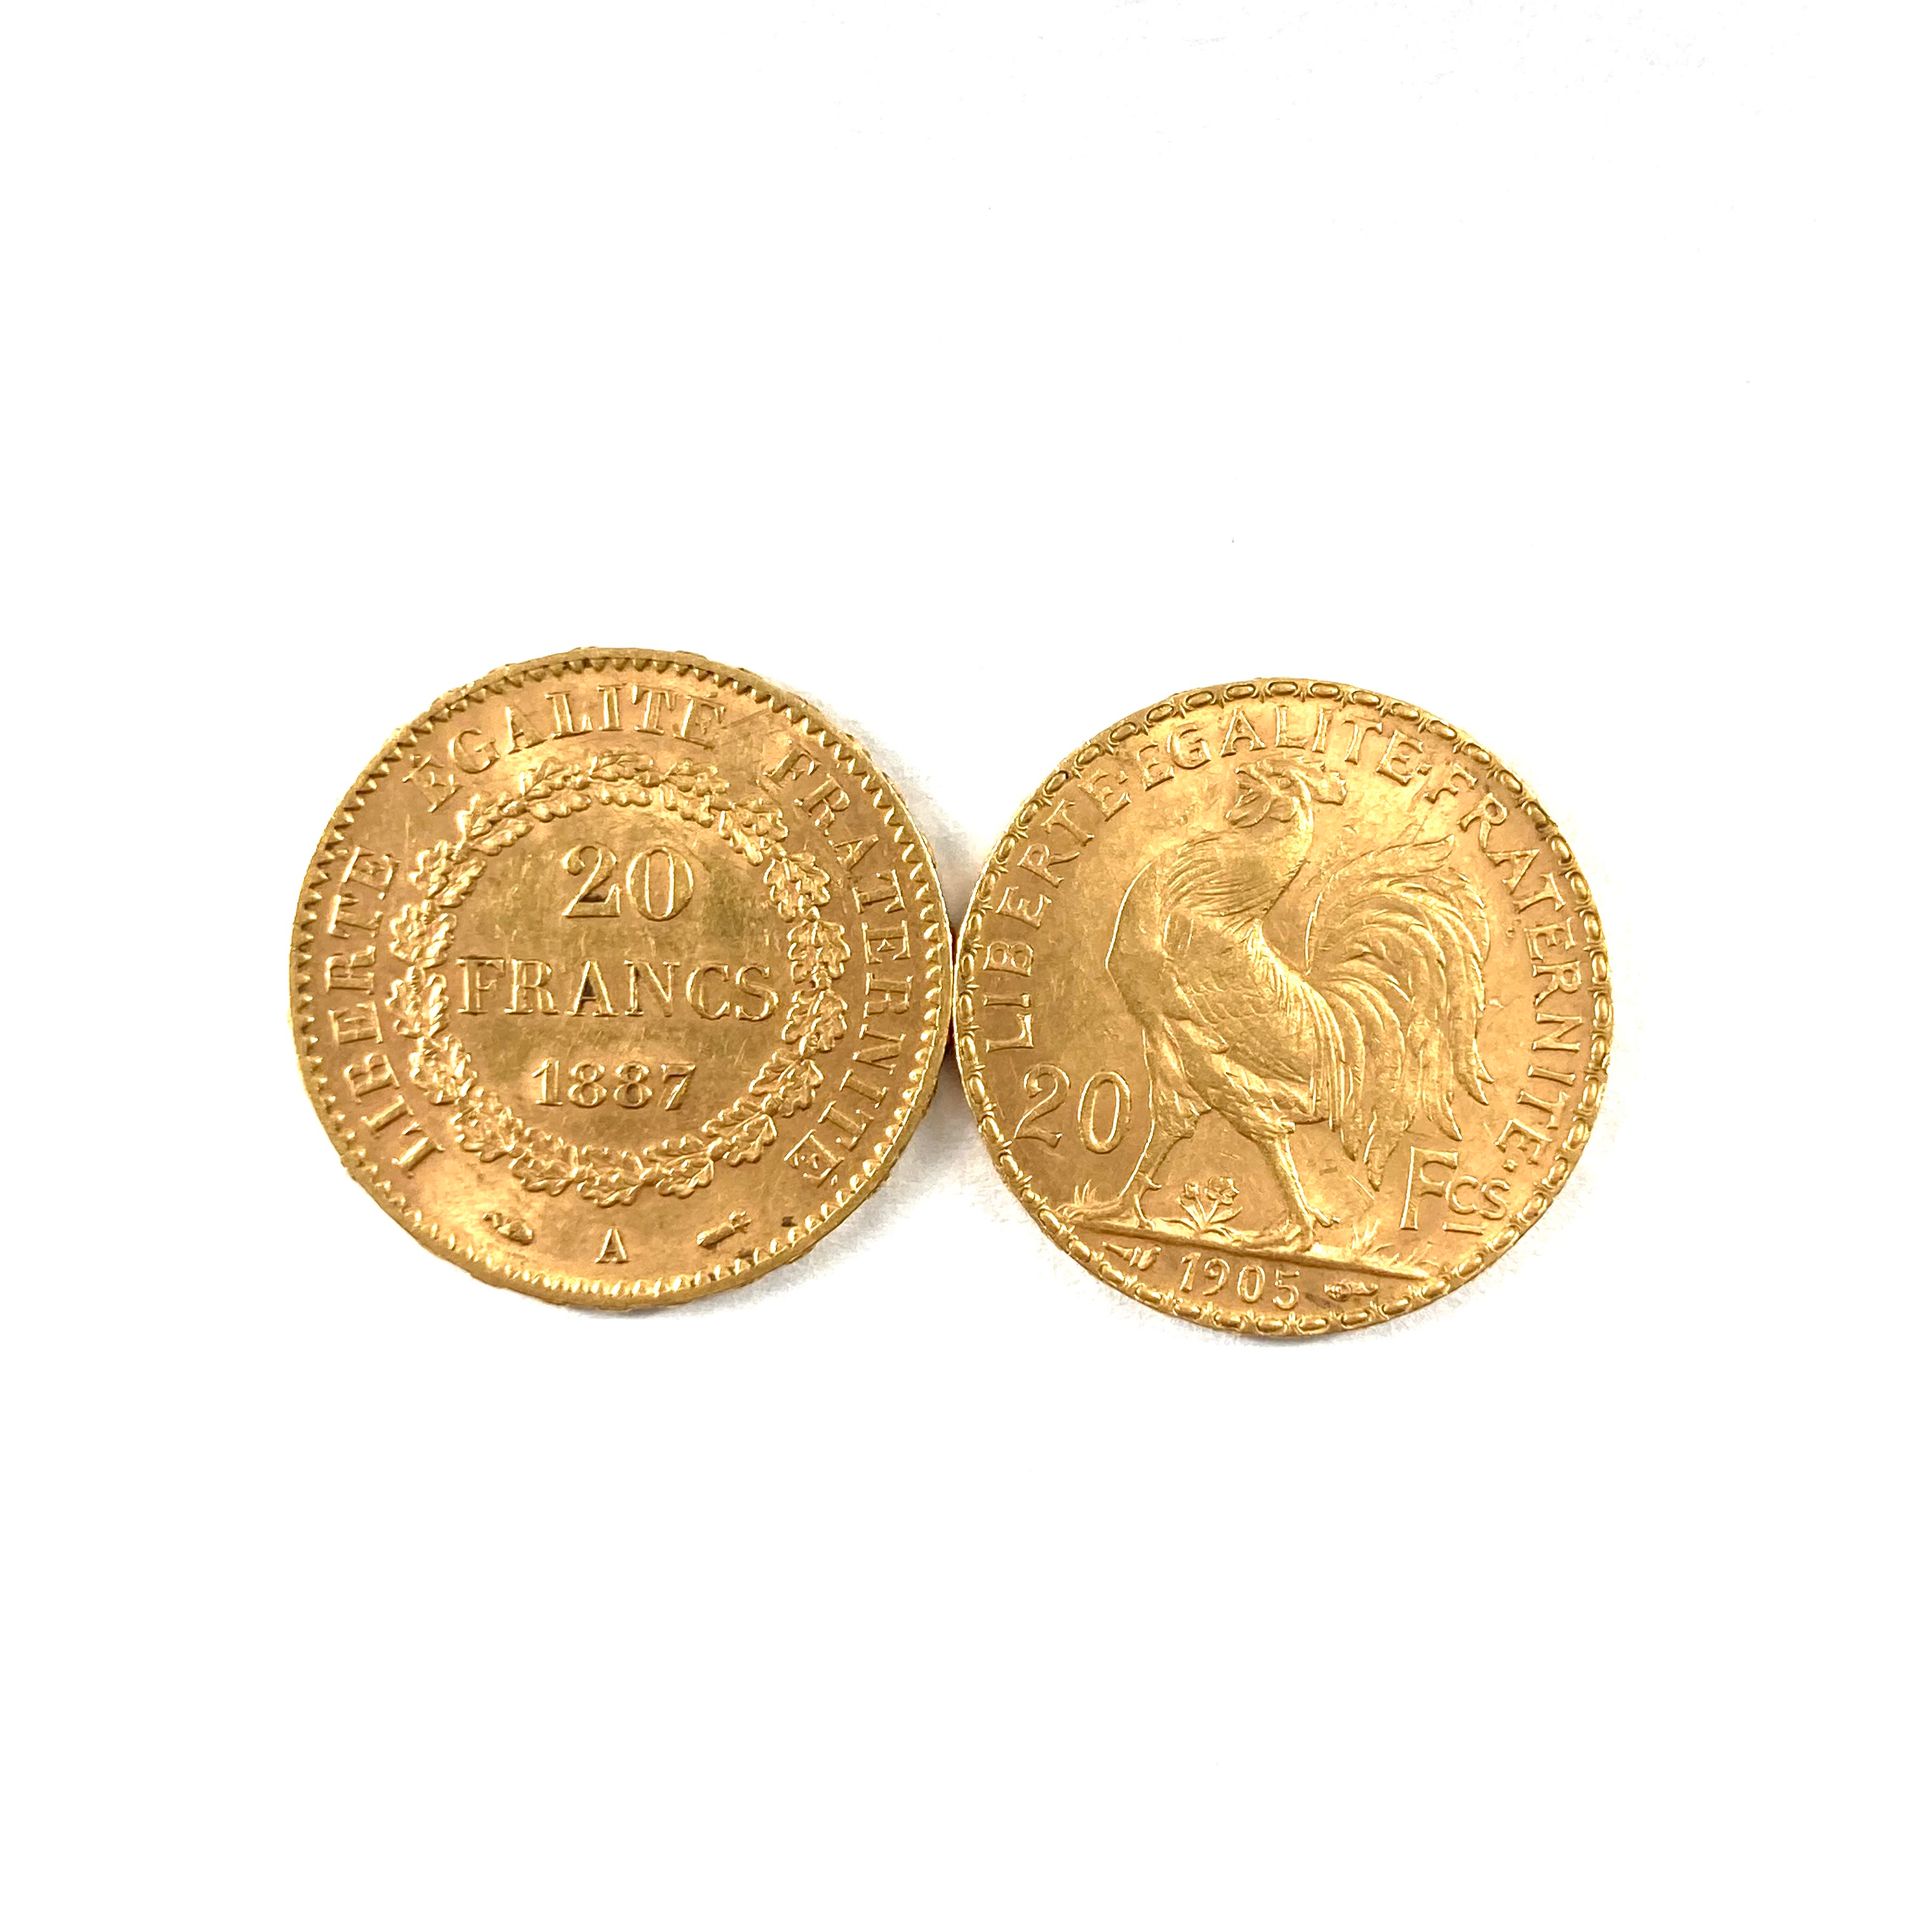 Null 两枚20法郎的金币。

- Genie 1887 A (巴黎车间)

- 公鸡1905

重量：12.90克。